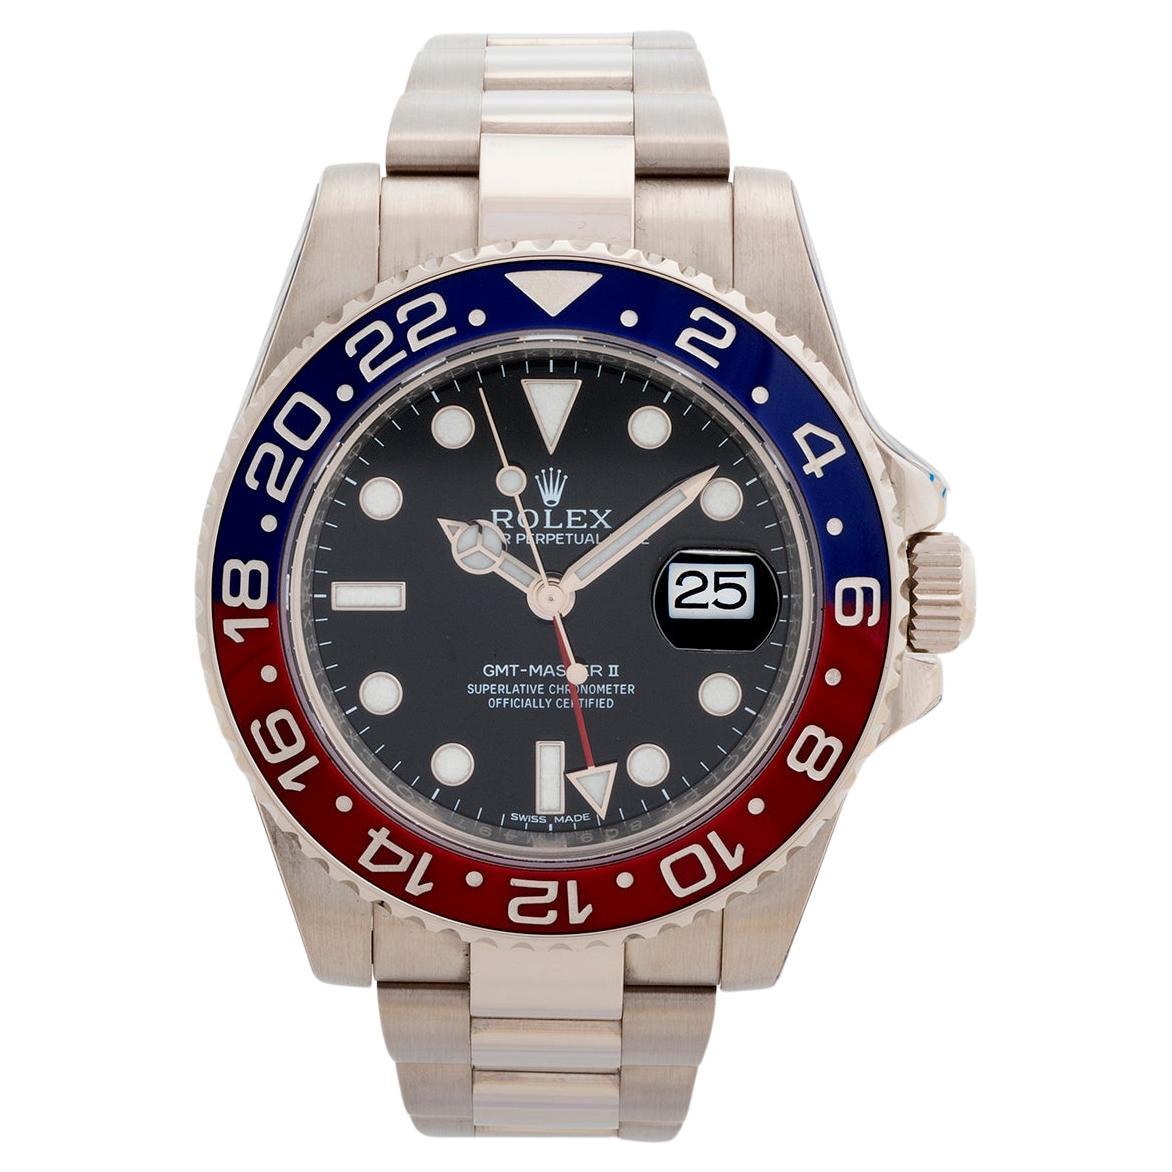 Rolex GMT Master II Armbanduhr. 18 Karat Weißgold. Ausgelaufen Referenz. Jahr 2015